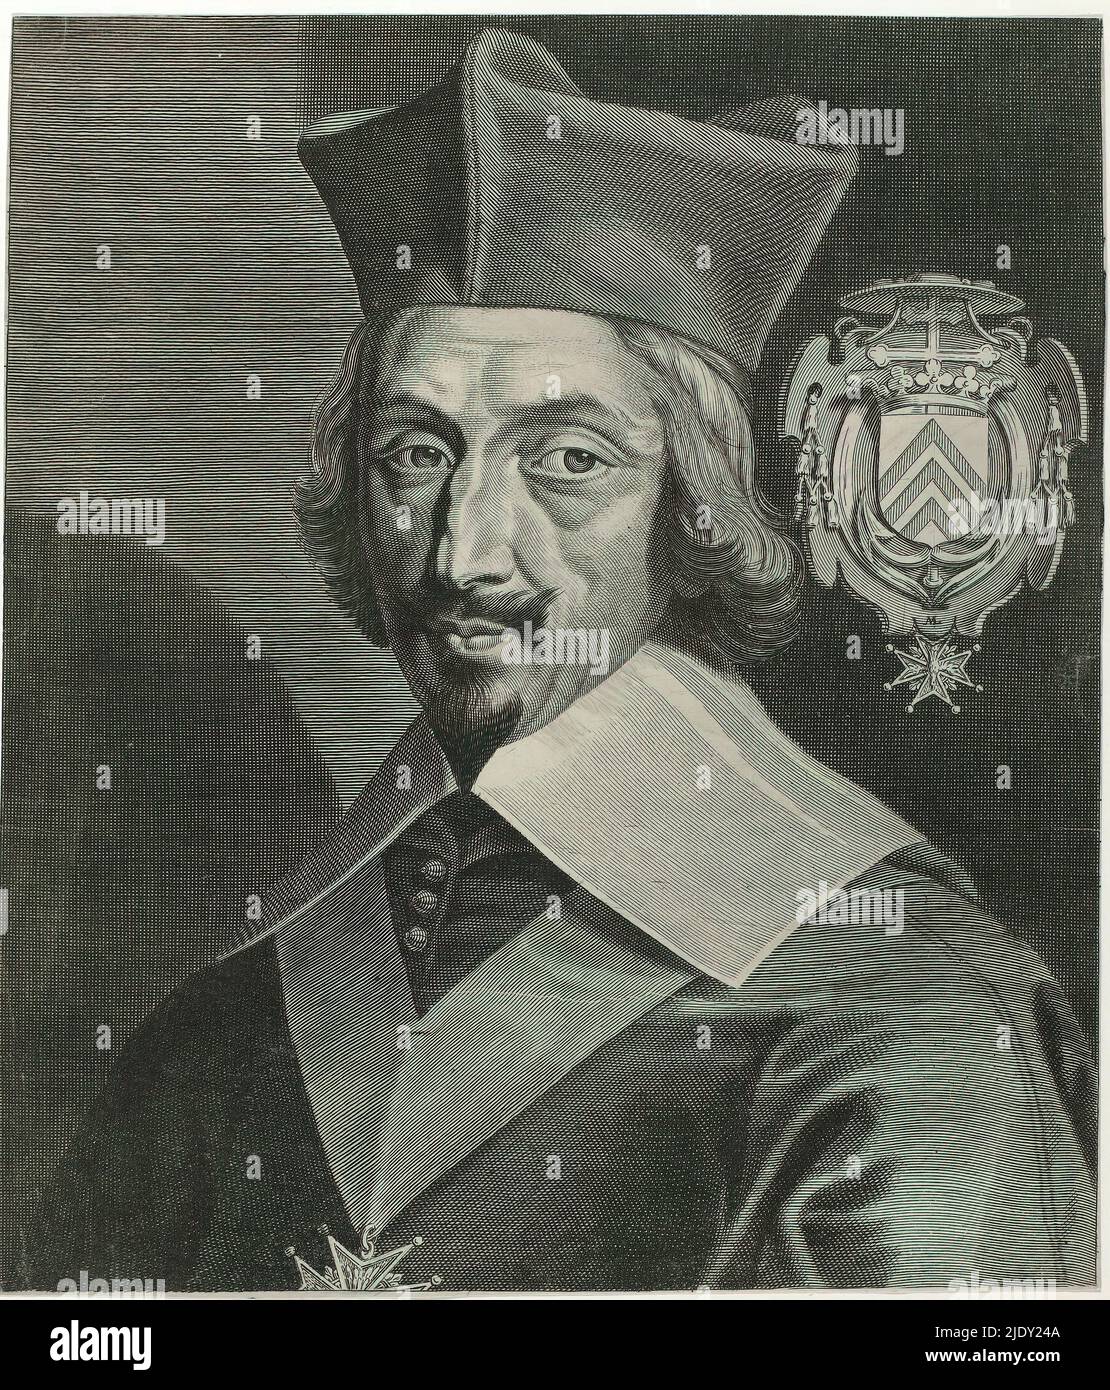 Porträt von Armand-Jean du Plessis Herzog von Richelieu, Druckerei: Michel Lasne, (auf Objekt erwähnt), 1600 - 1667, Papier, Gravur, Höhe 297 mm × Breite 255 mm Stockfoto